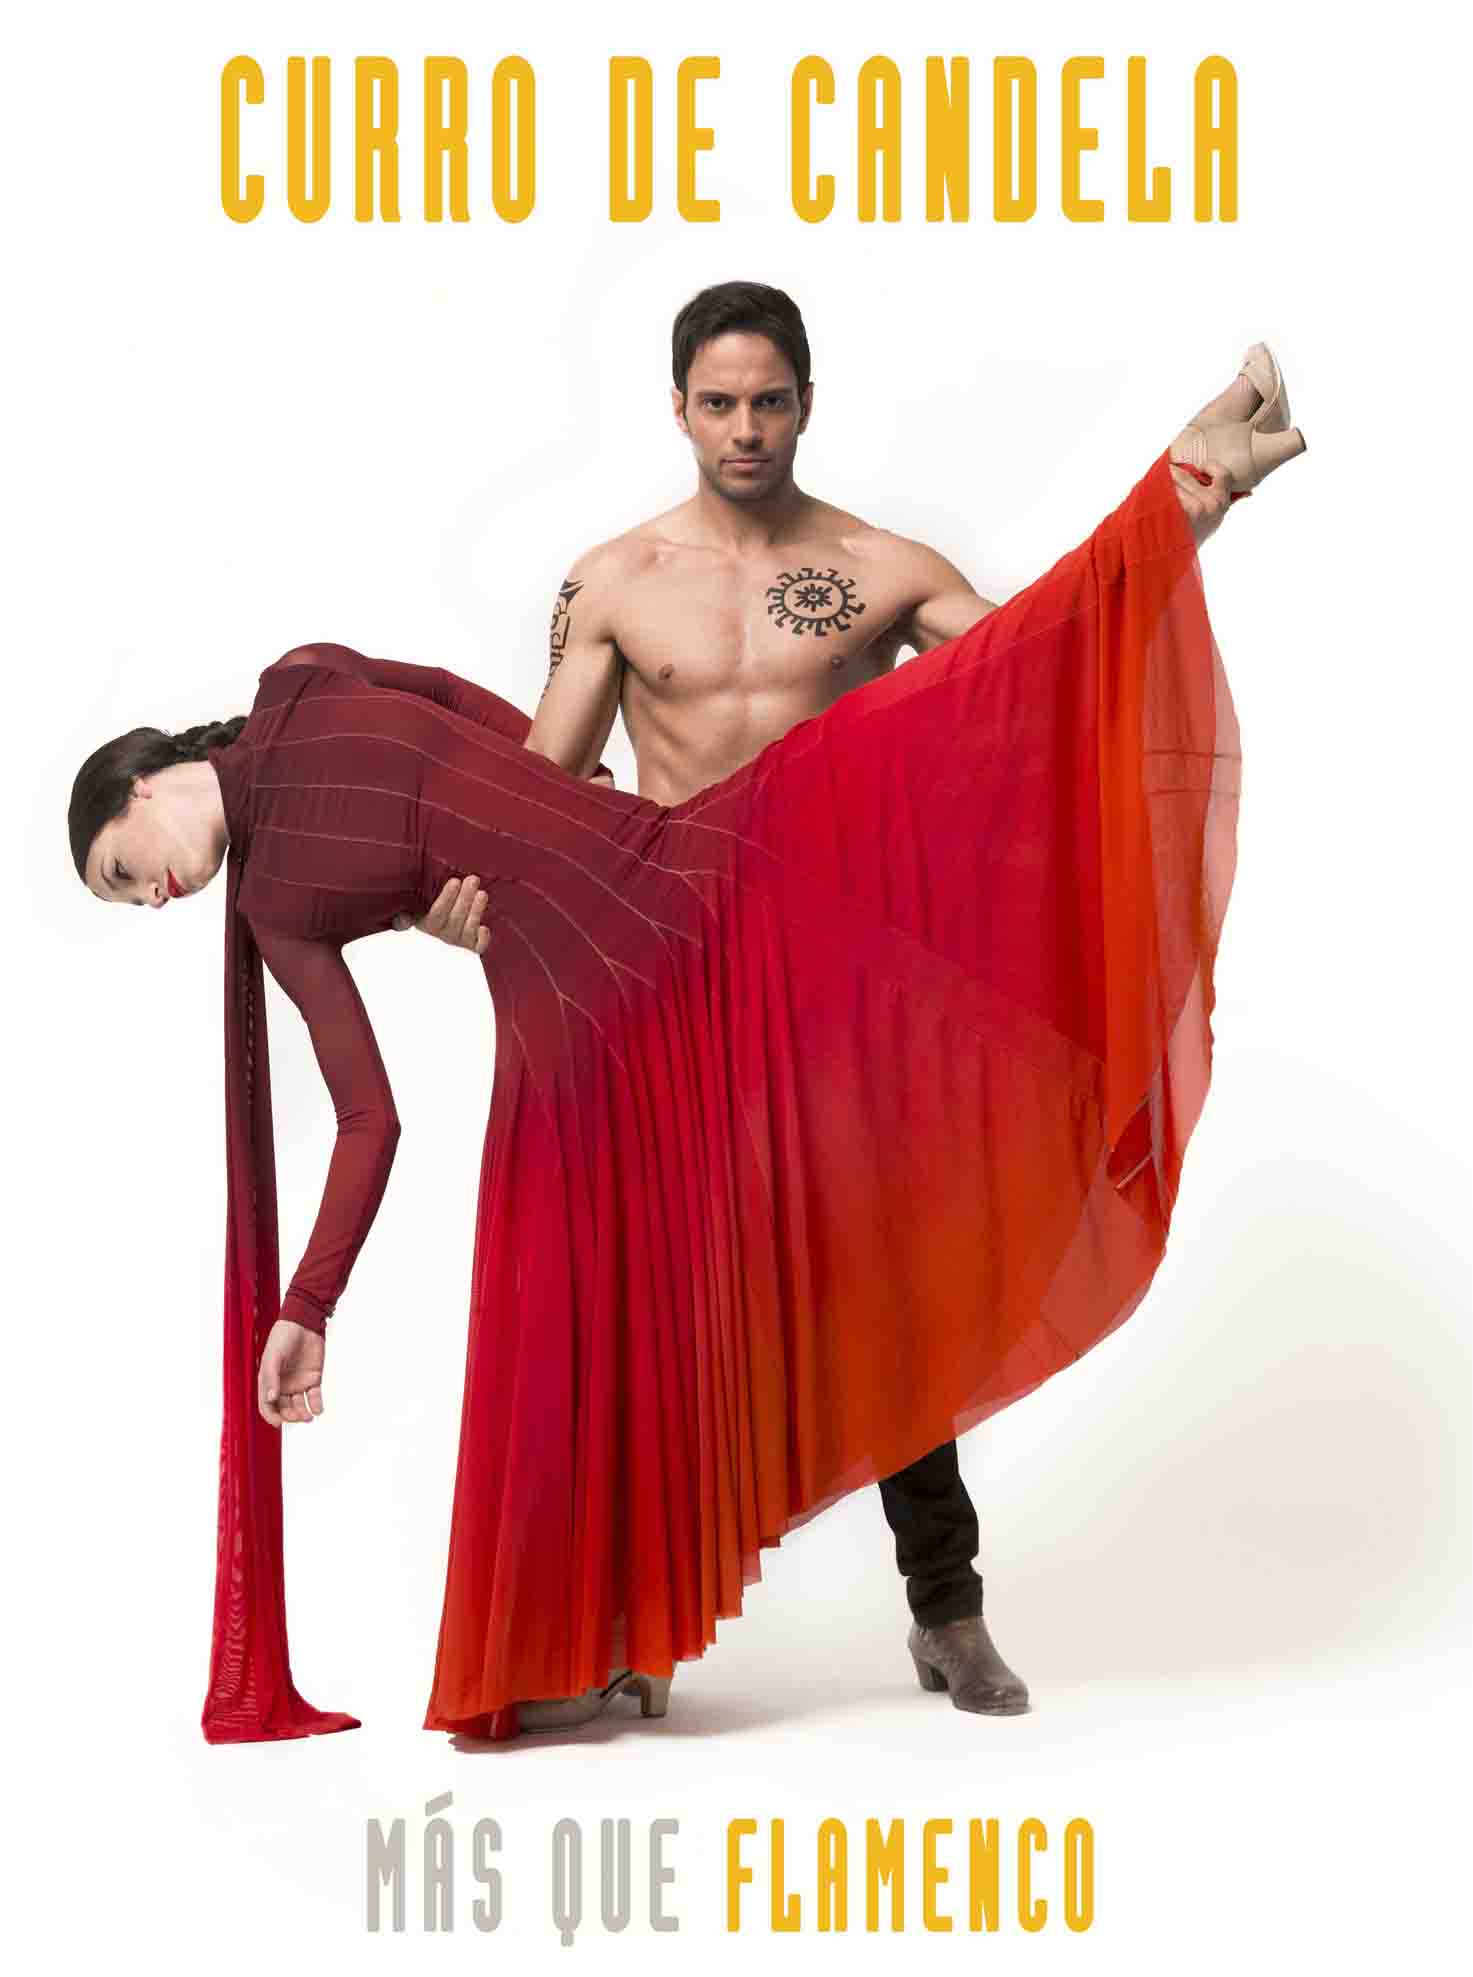 3 de Marzo: Más que flamenco. Curro de Candela